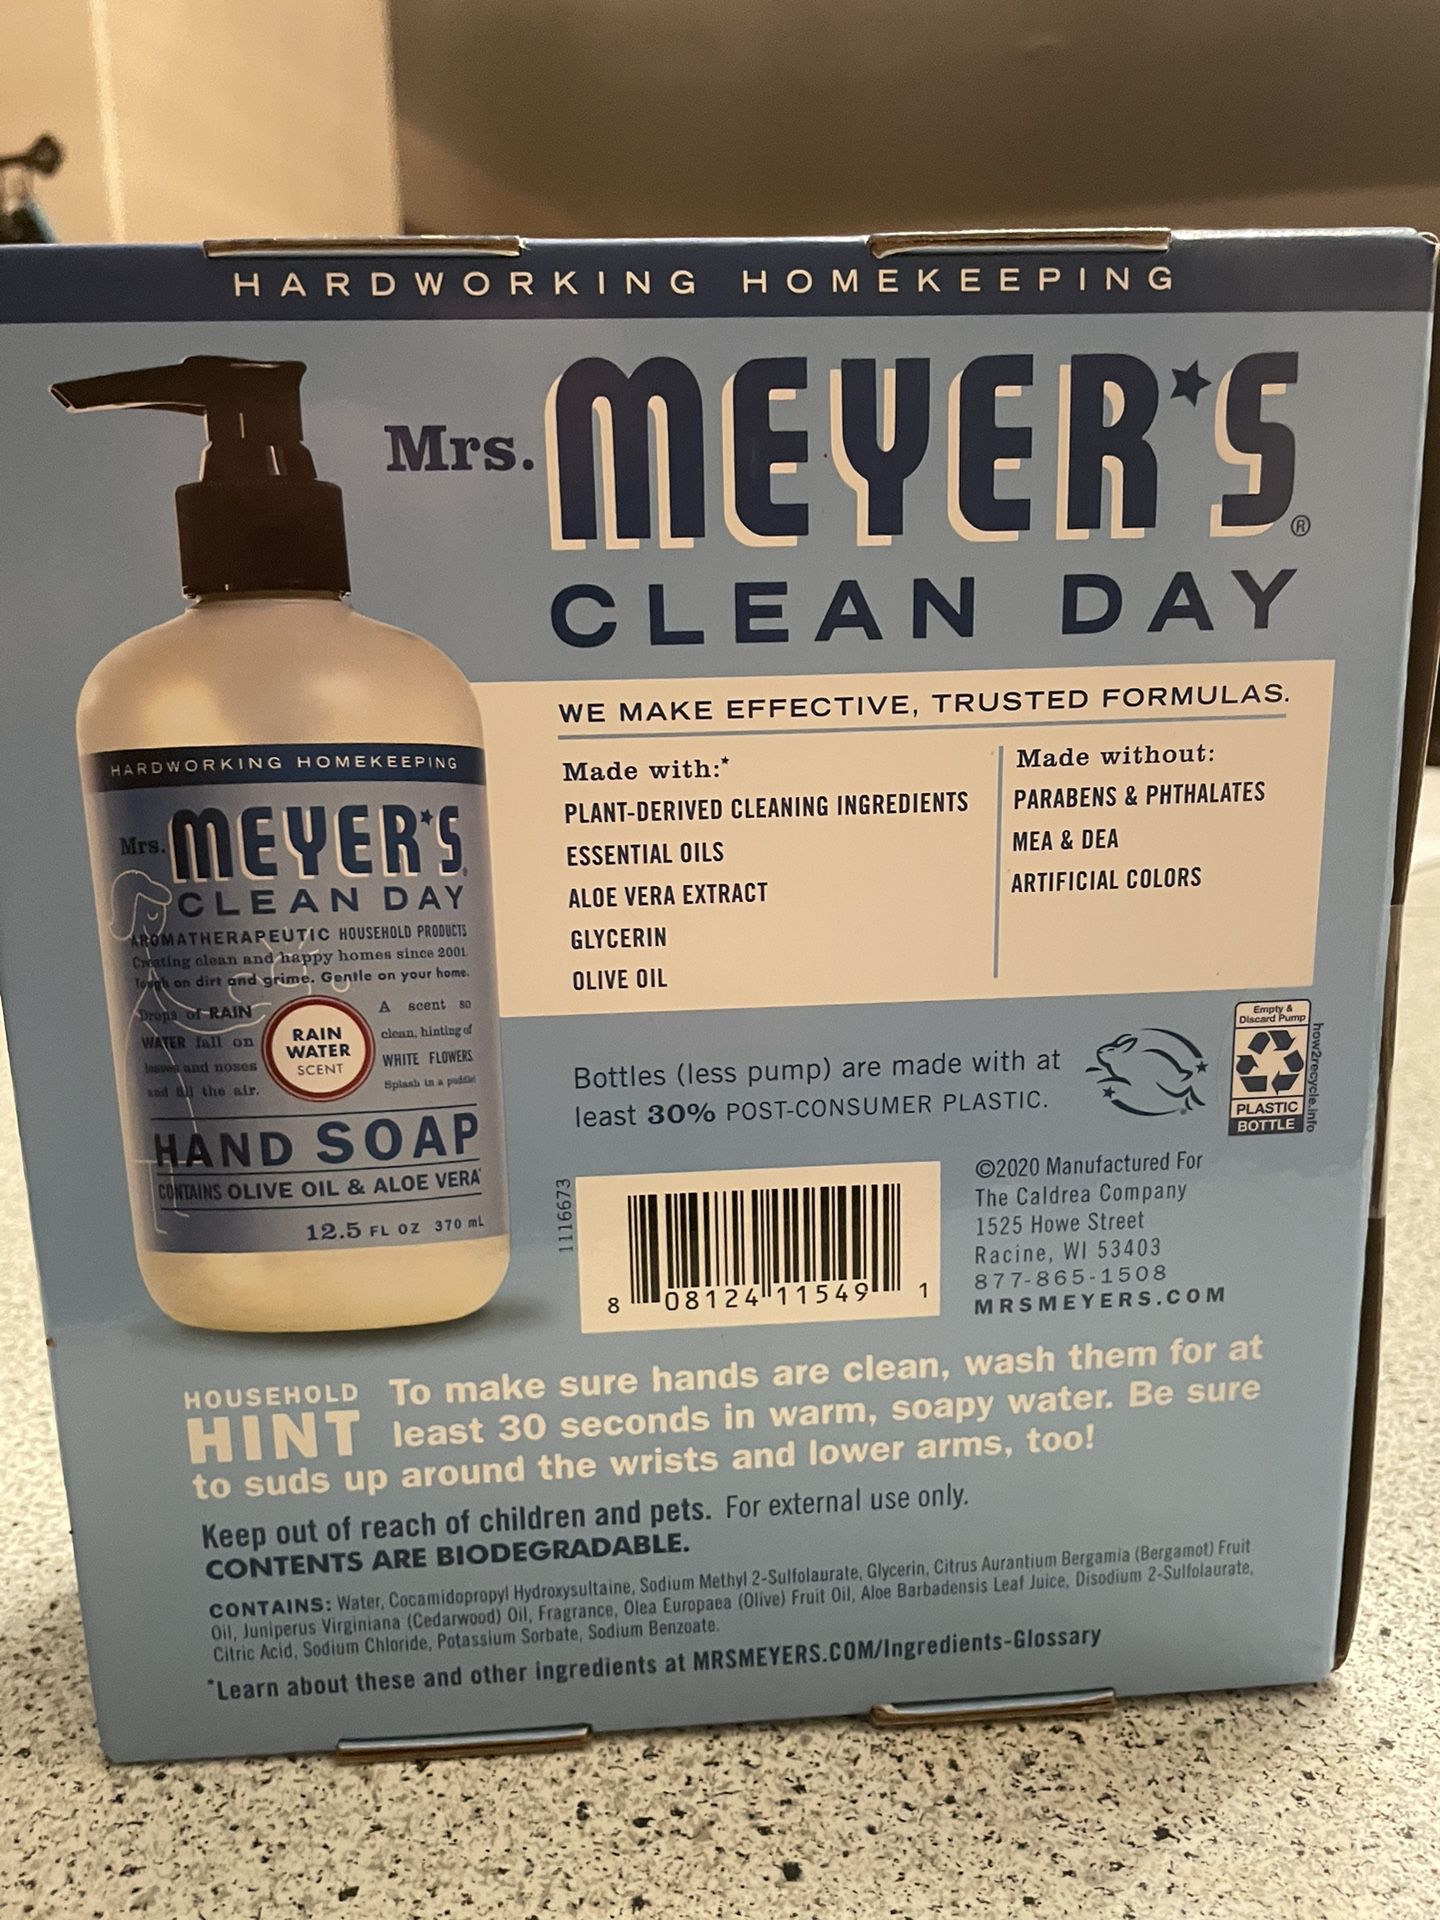 New -Mrs. Meyer’s Hand Soap 